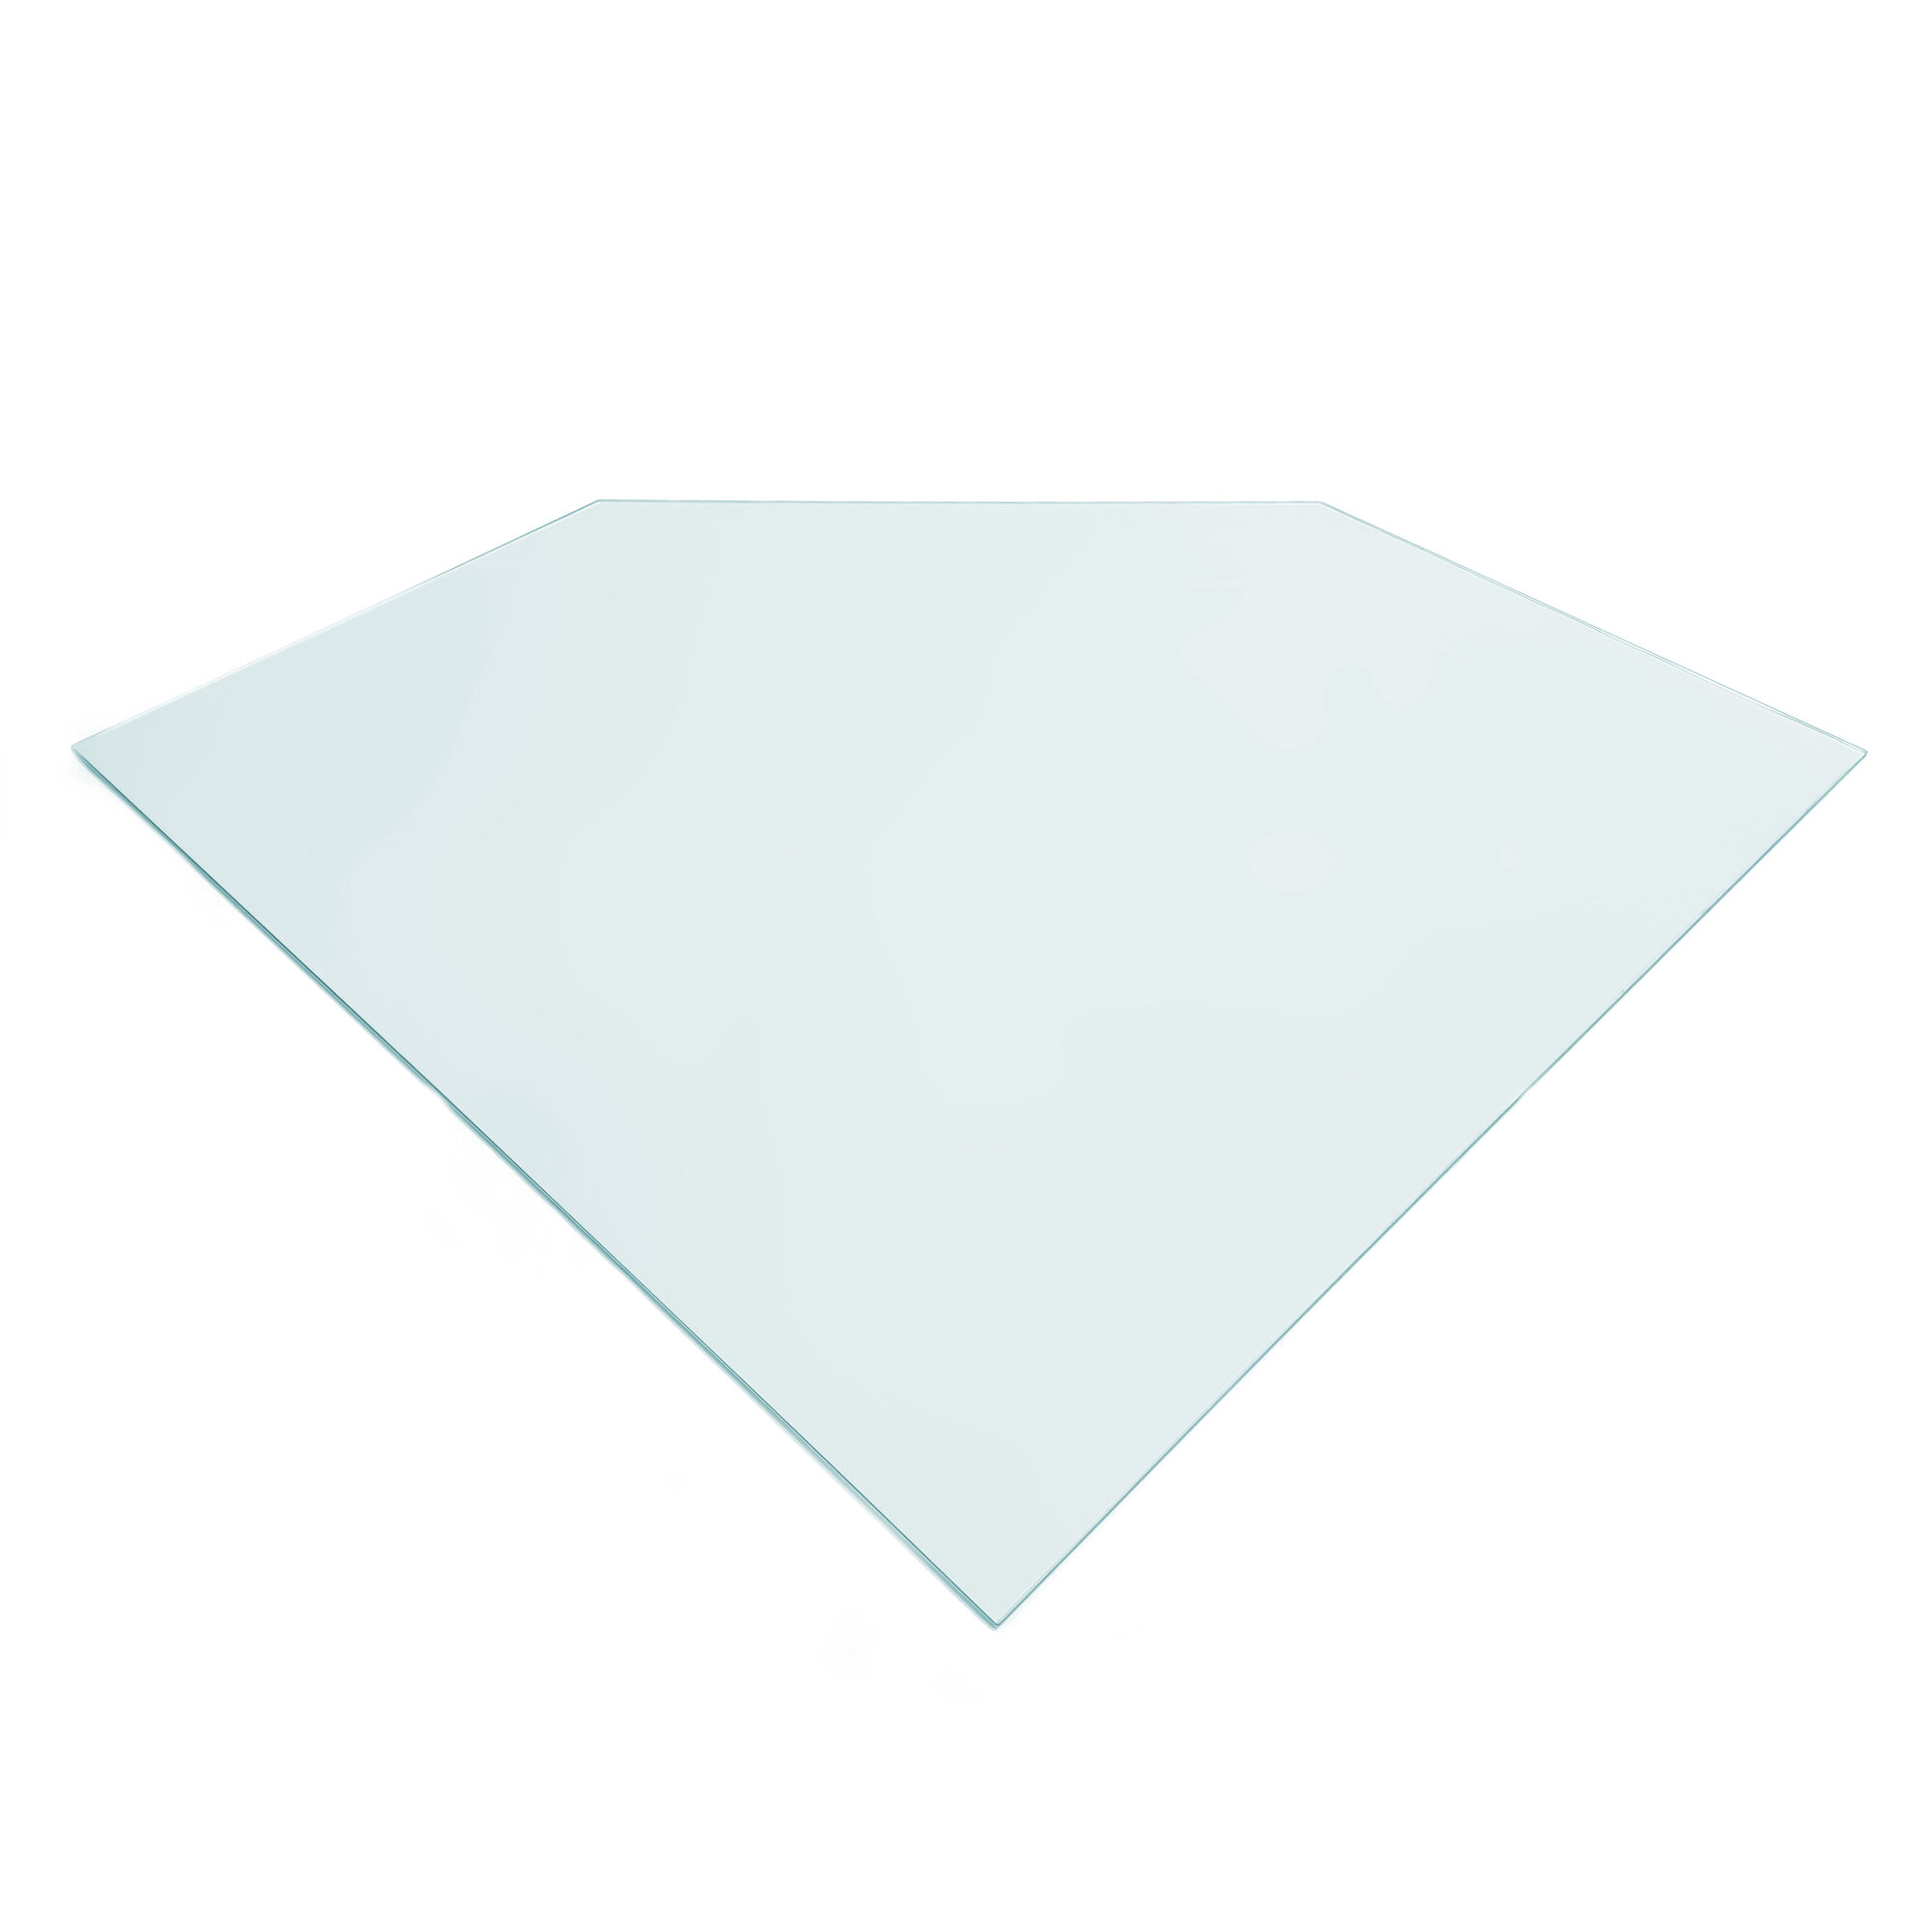 Supra Стеклянная прямоугольная пластина на пол, со срезанным углом (Supra)